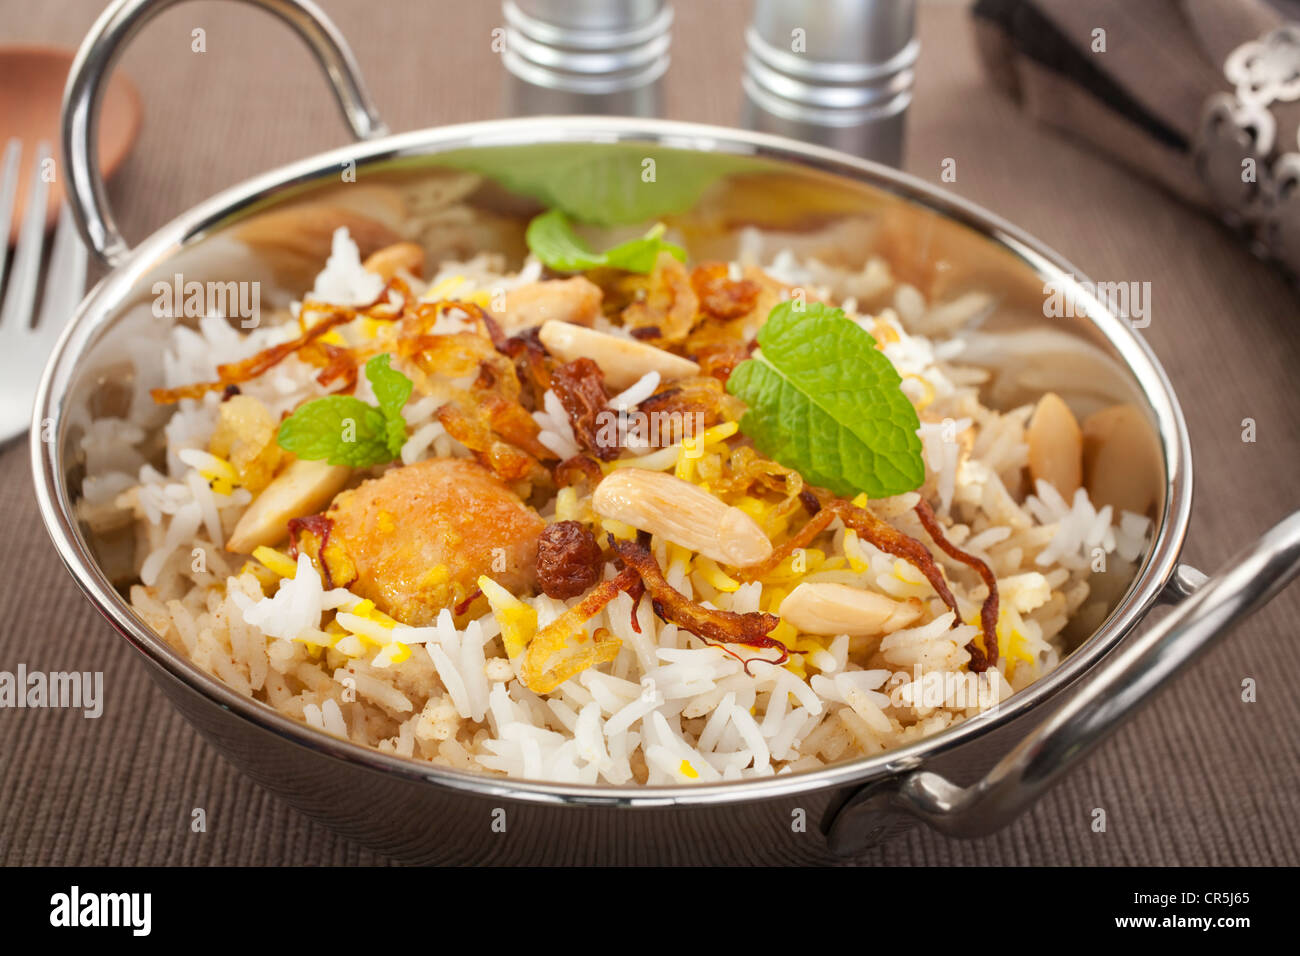 Occasion spéciale indien lave, poulet biryani est garnie avec des oignons frits, des raisins secs, les amandes et la menthe. Banque D'Images